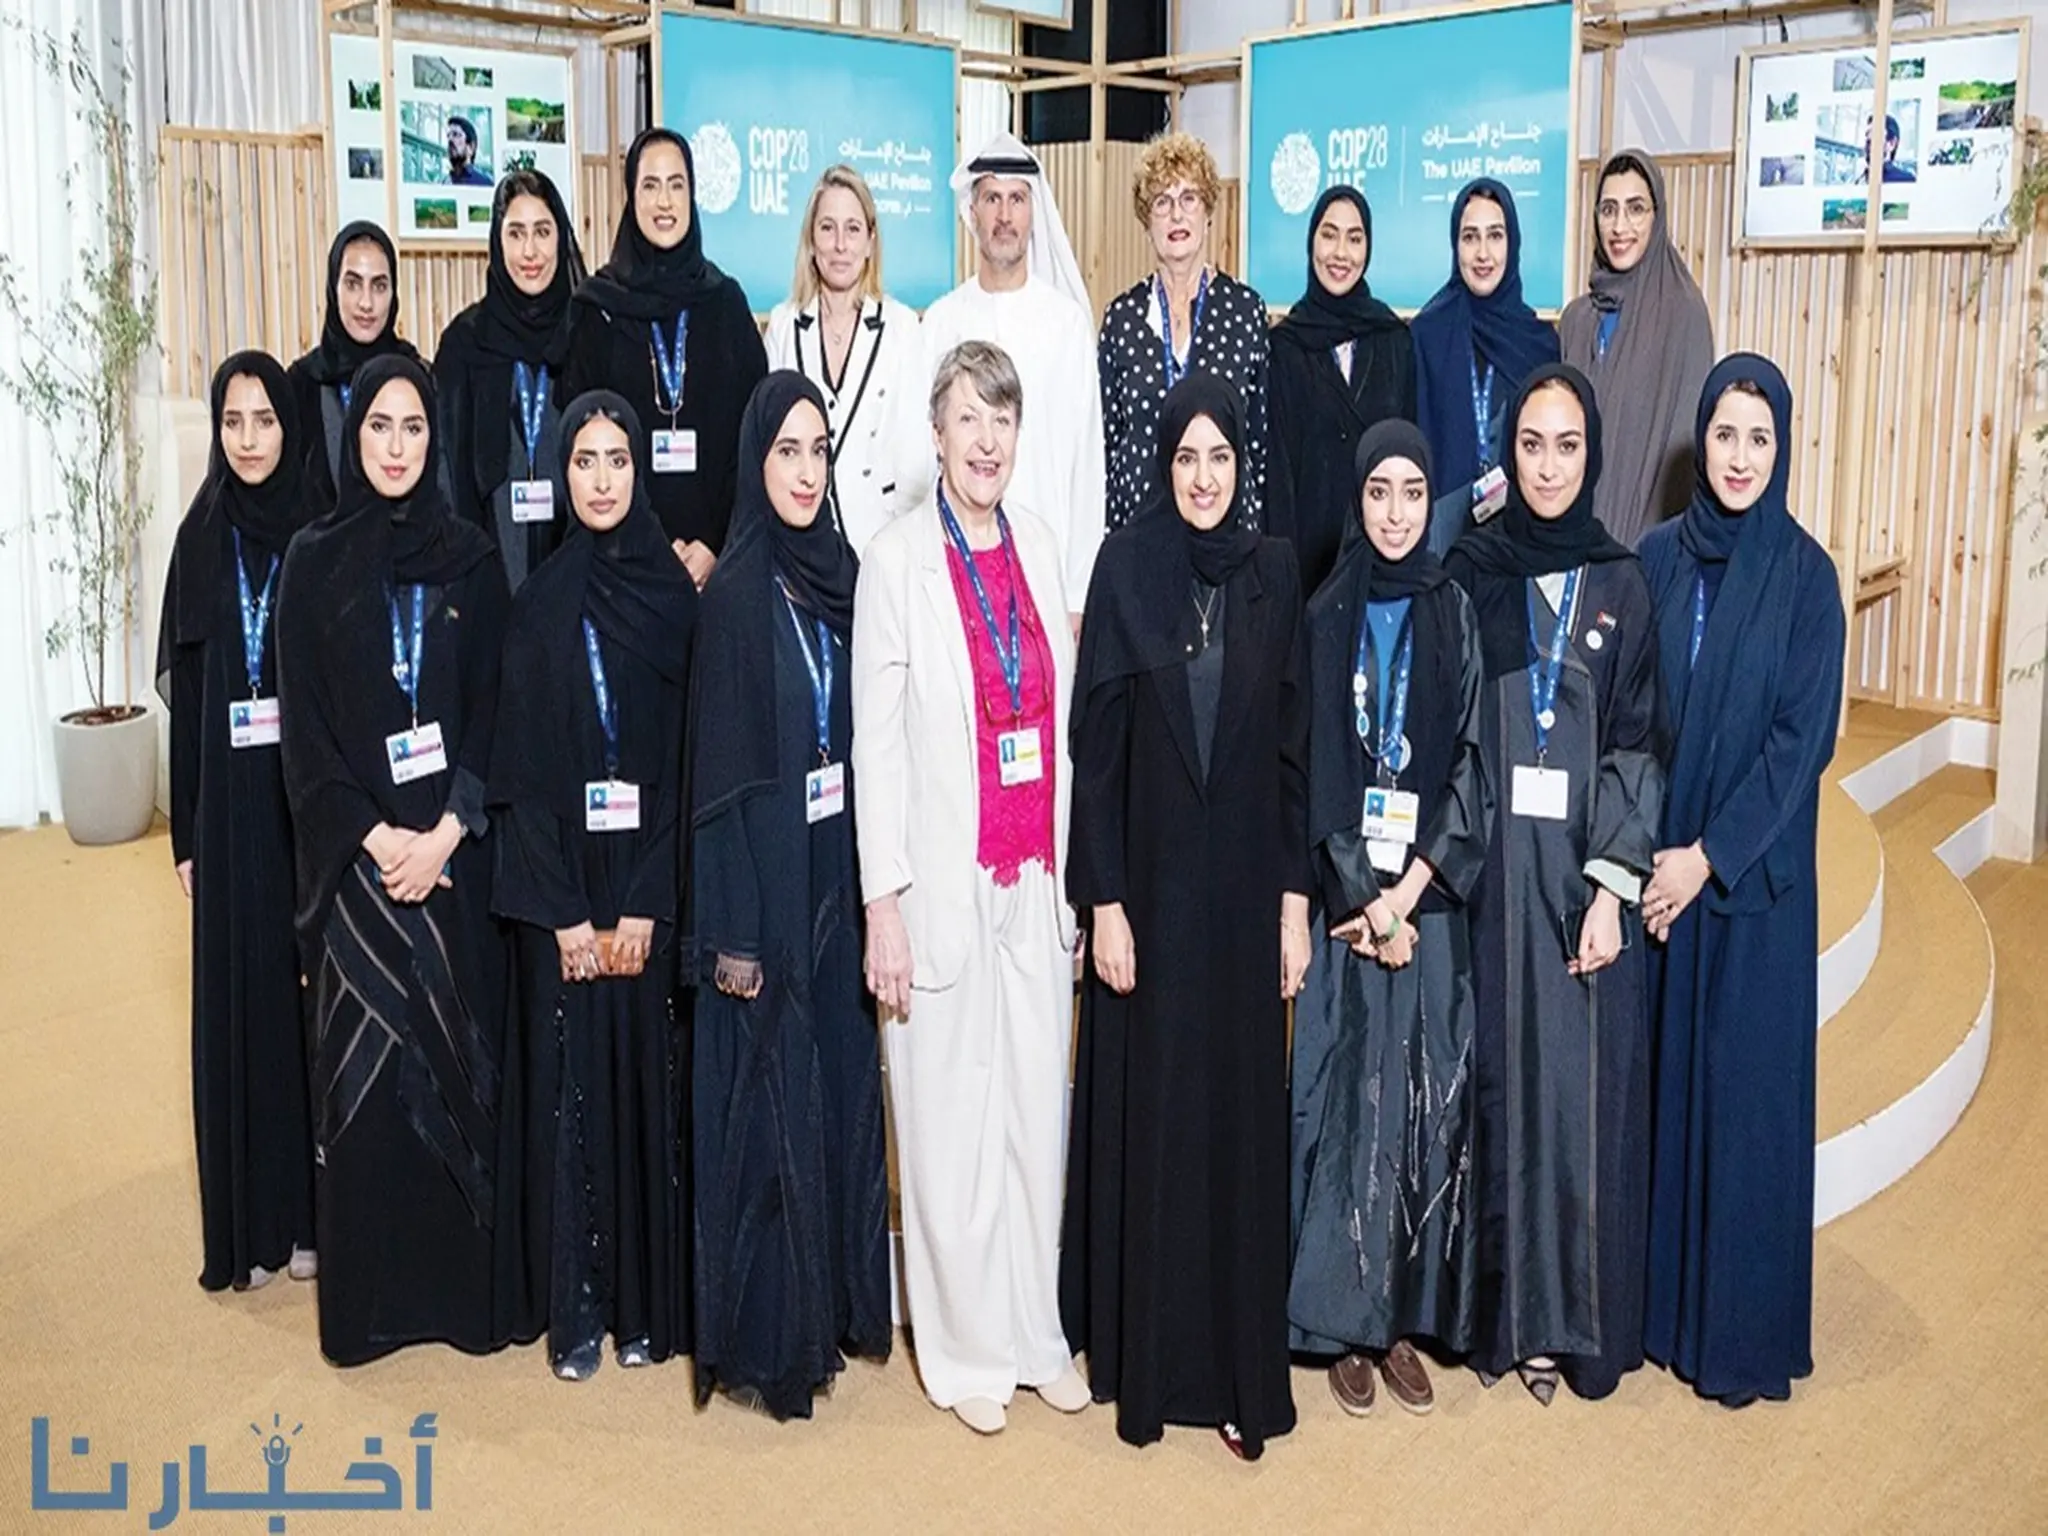 الإمارات تعلن إطلاق أول فرع لمنظمة "المرأة في الطاقة النووية" في المنطقة